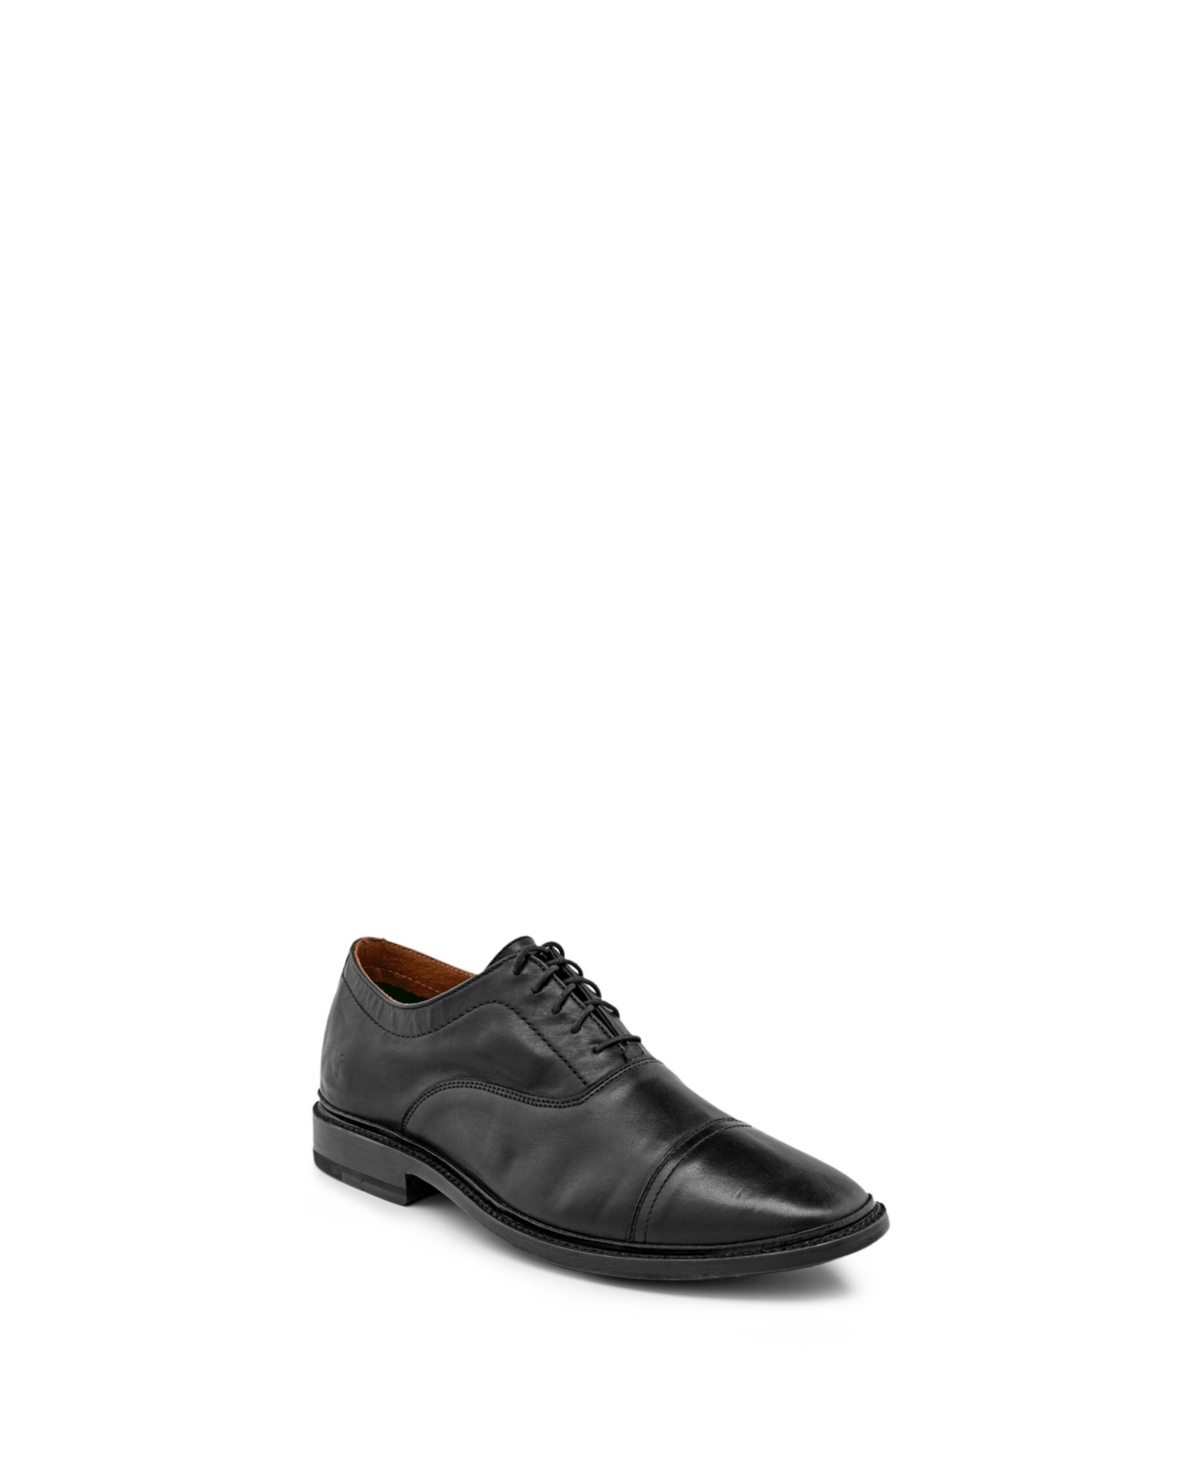 Men's Paul Bal Oxford Shoes - Black